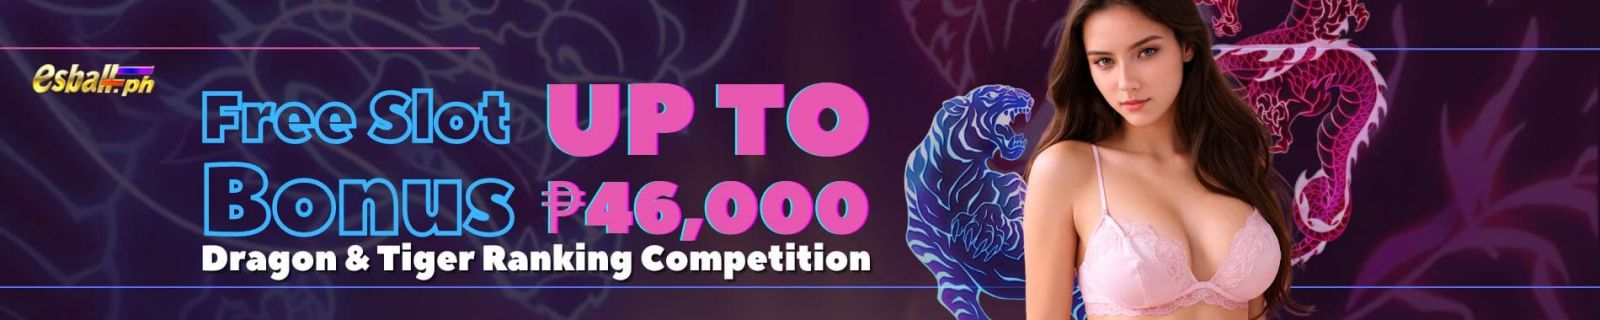 Dragon & Tiger Ranking, Get up to ₱46,000 Free Slot Bonus Month